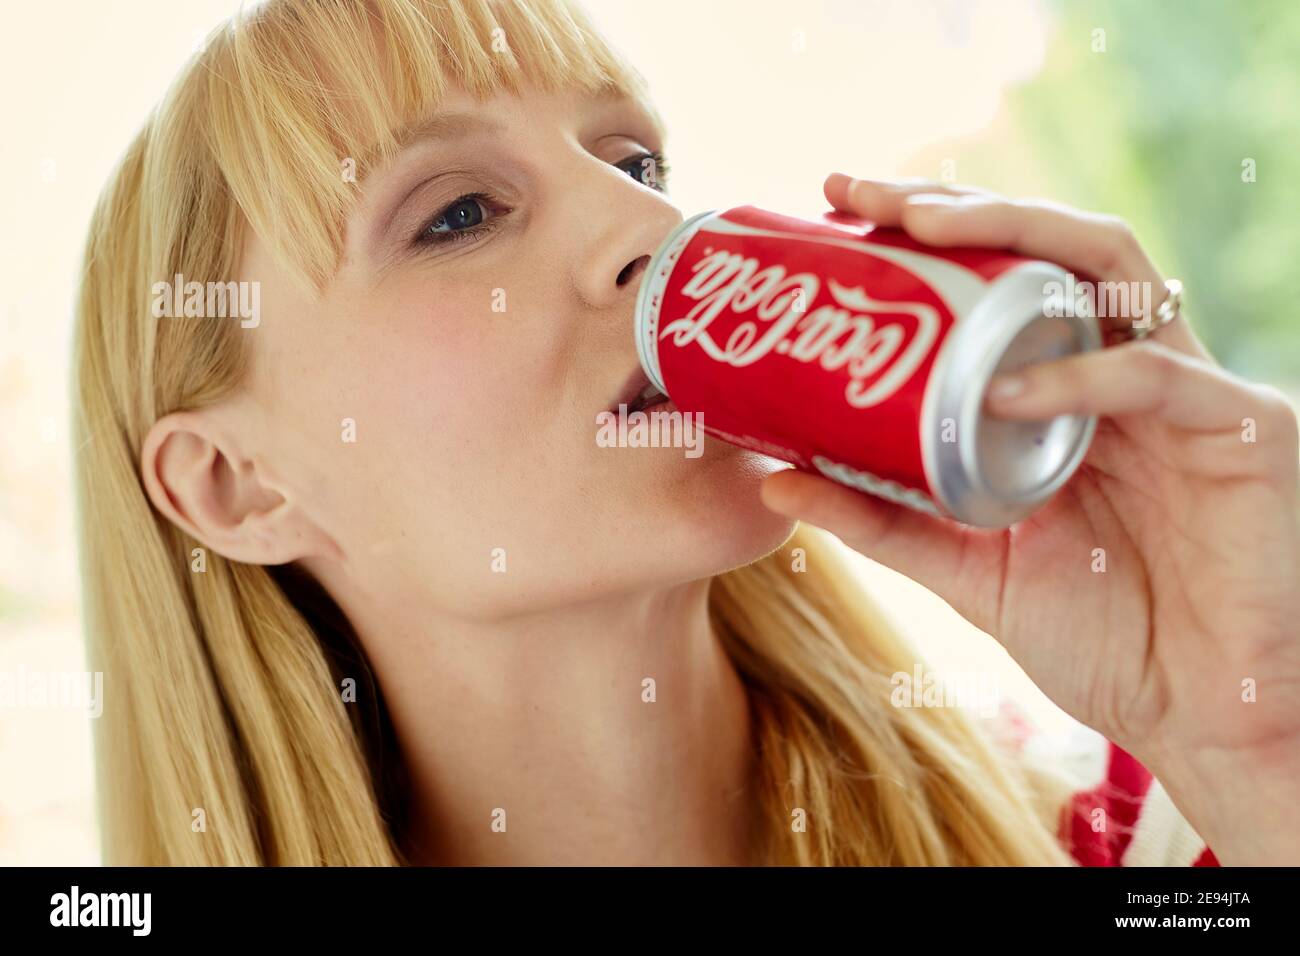 Donna che beve coke da una lattina Foto Stock